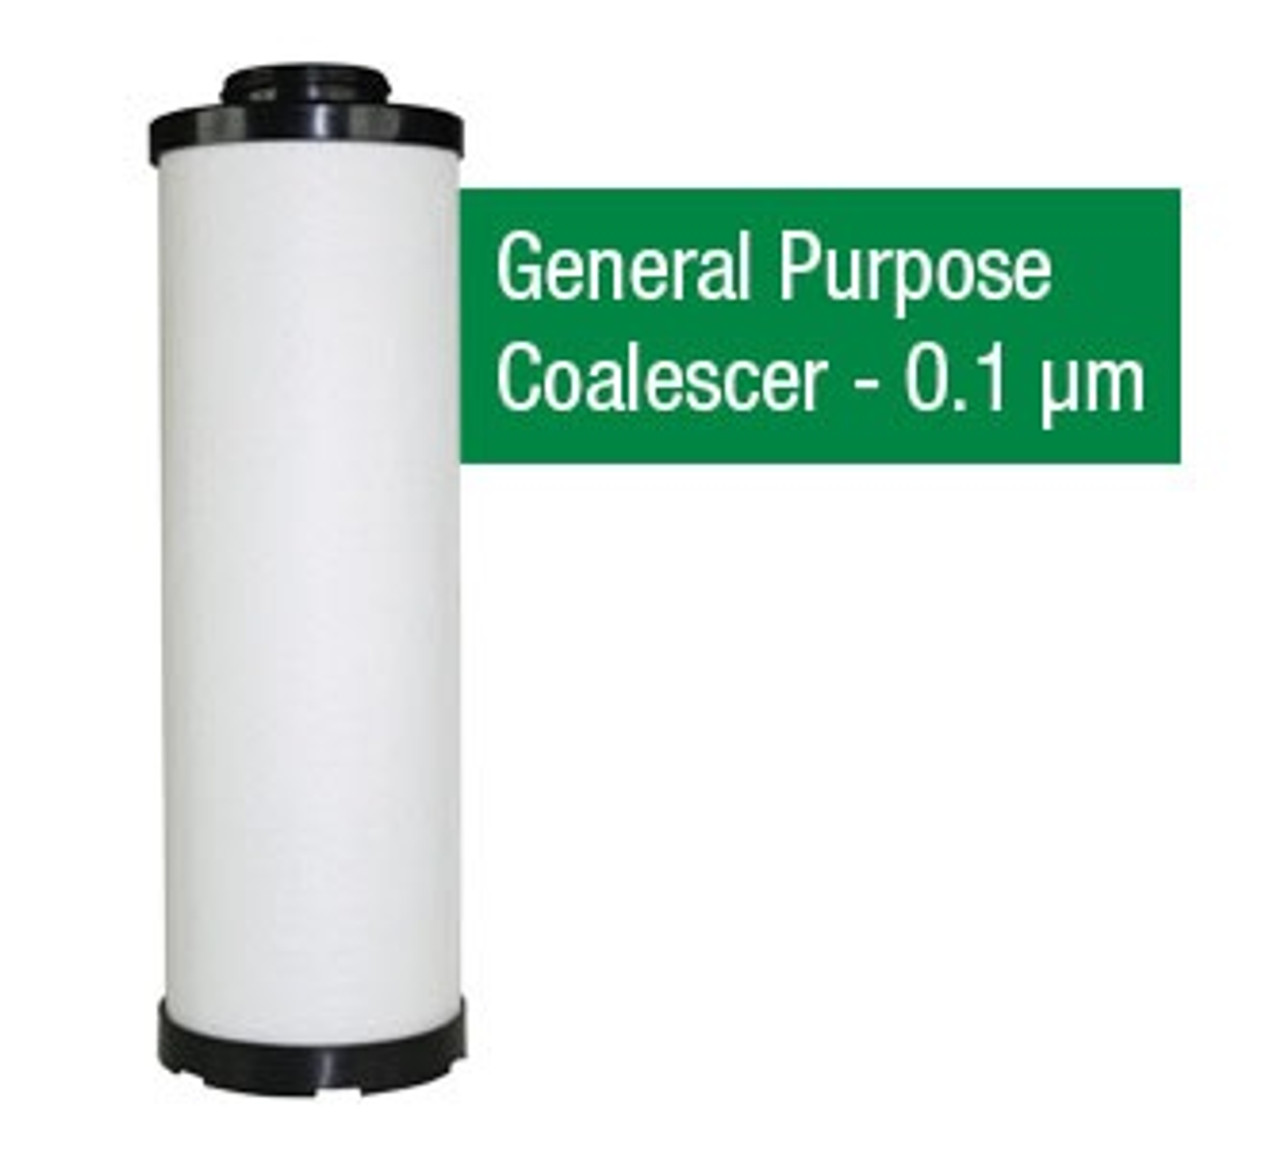 ABAC 1629 - 1629010507 - AB11X - Grade X - General Purpose Coalescer - 0.1 um